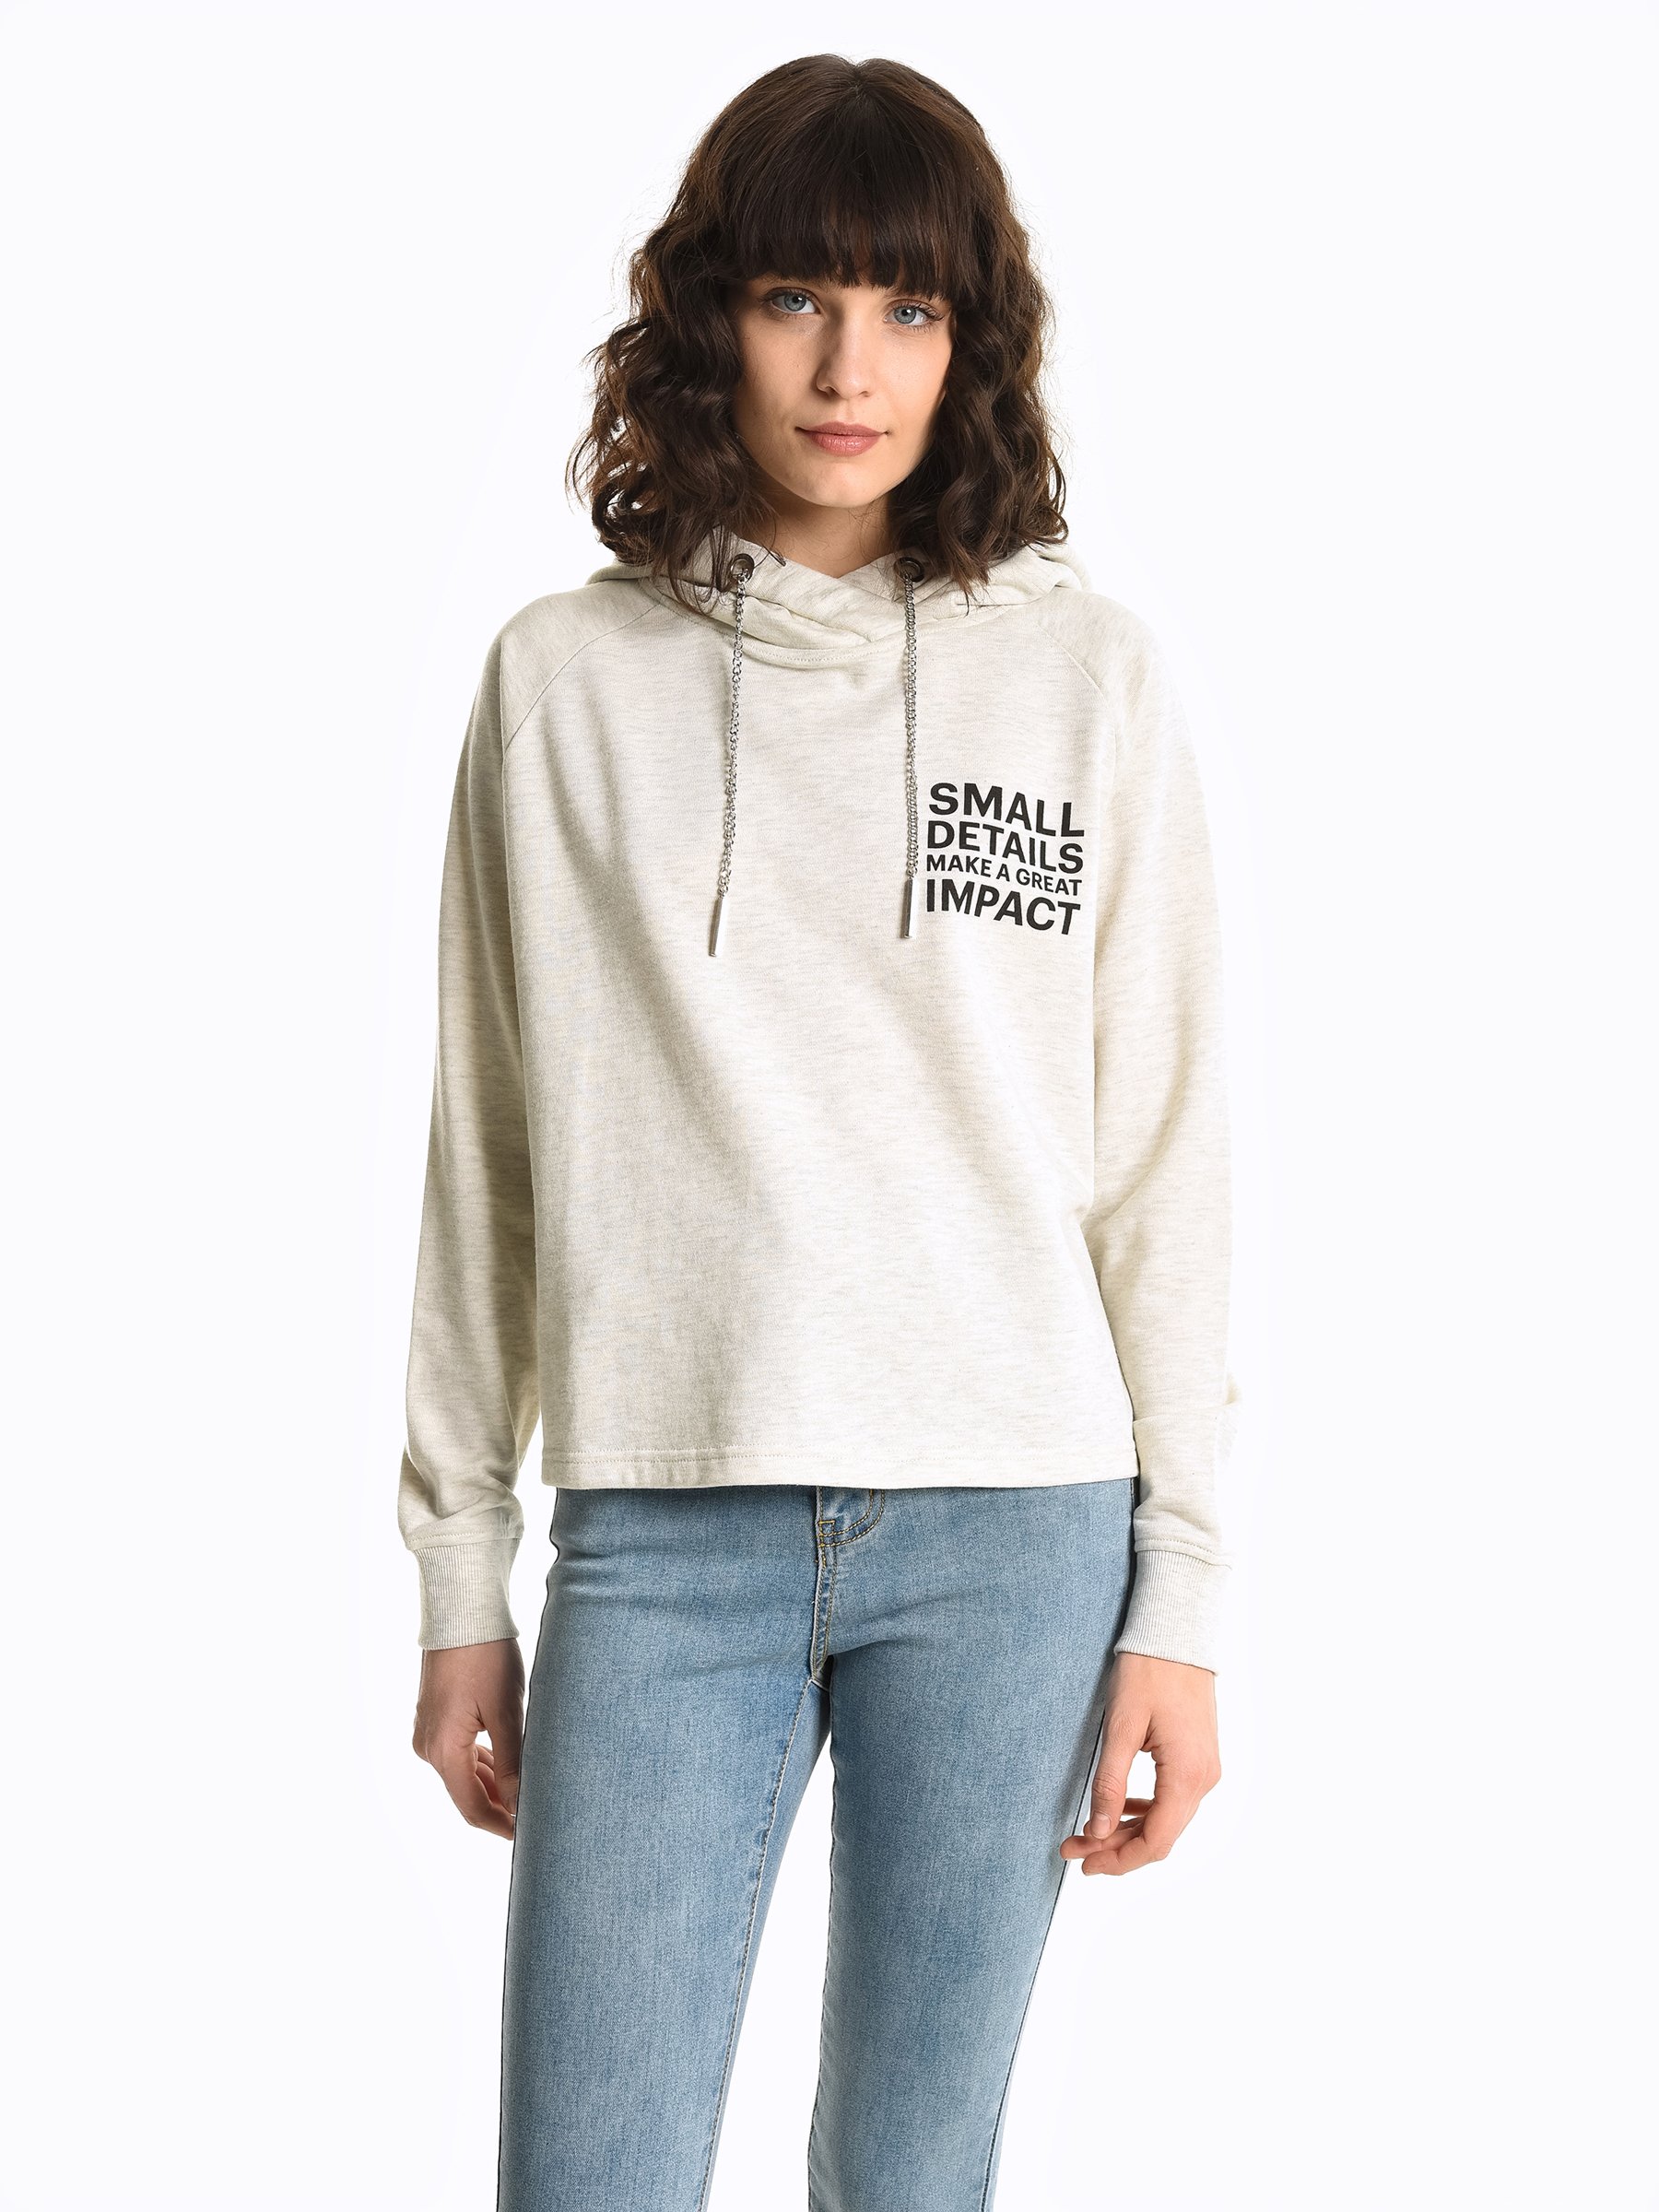 Buy > sweatshirt hoodie string > in stock